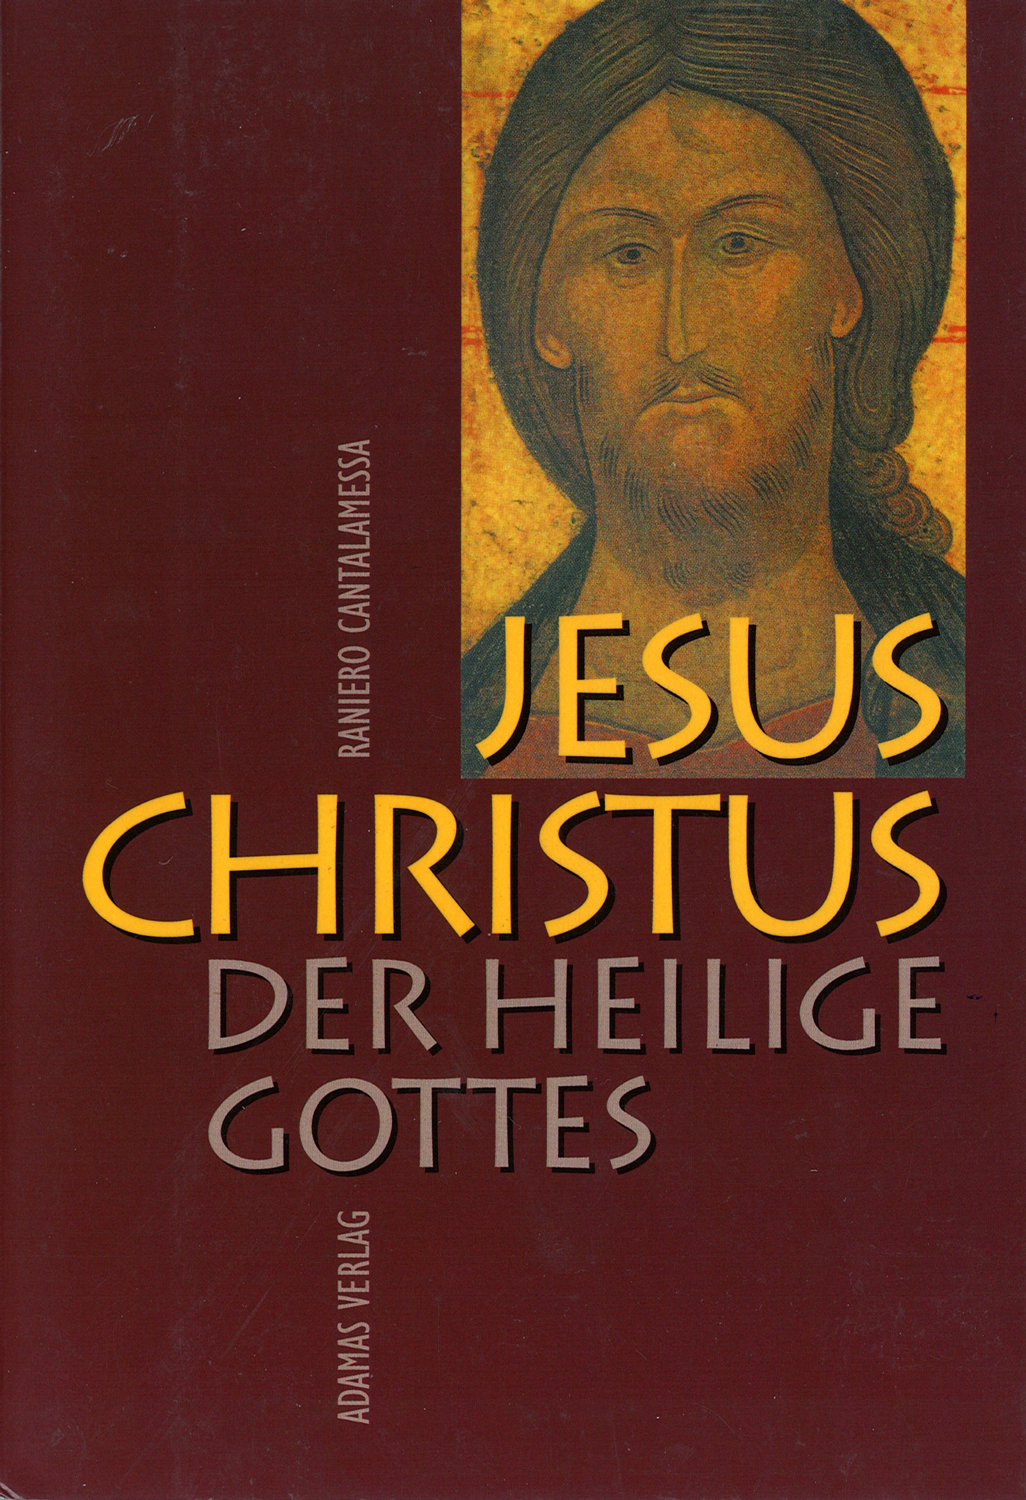 Jesus Christus, der Heilige Gottes - Gebetshaus Augsburg | Shop